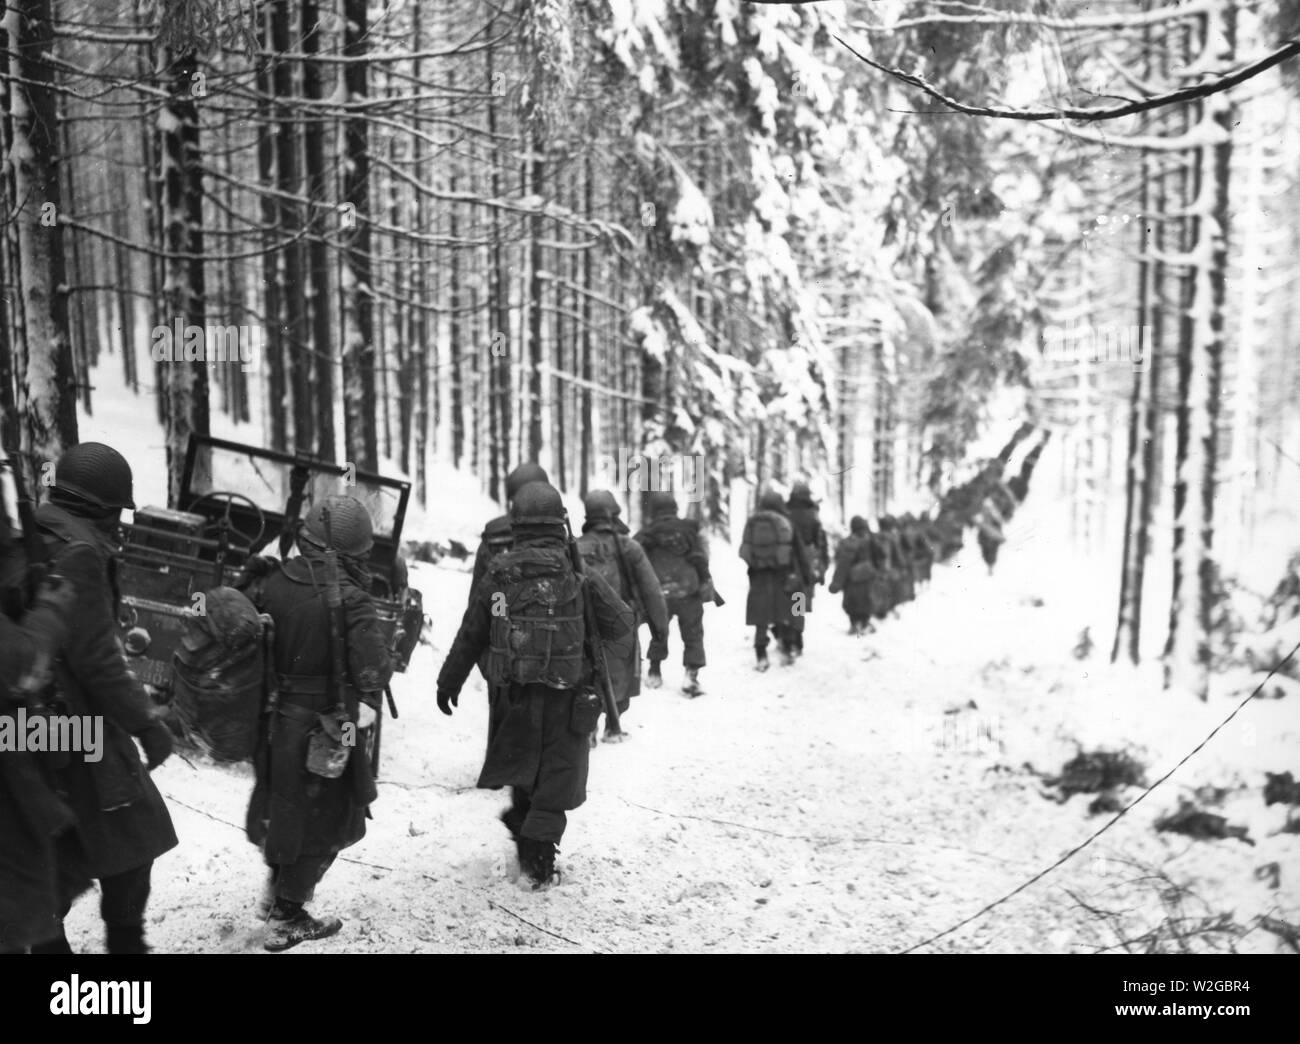 Originale Bildunterschrift: Amerikanische Soldaten der 75th Division März entlang der schneebedeckten Straße auf dem Weg von der St. Vith-Houffalize Straße in Belgien zu schneiden. 1/24/45. Stockfoto